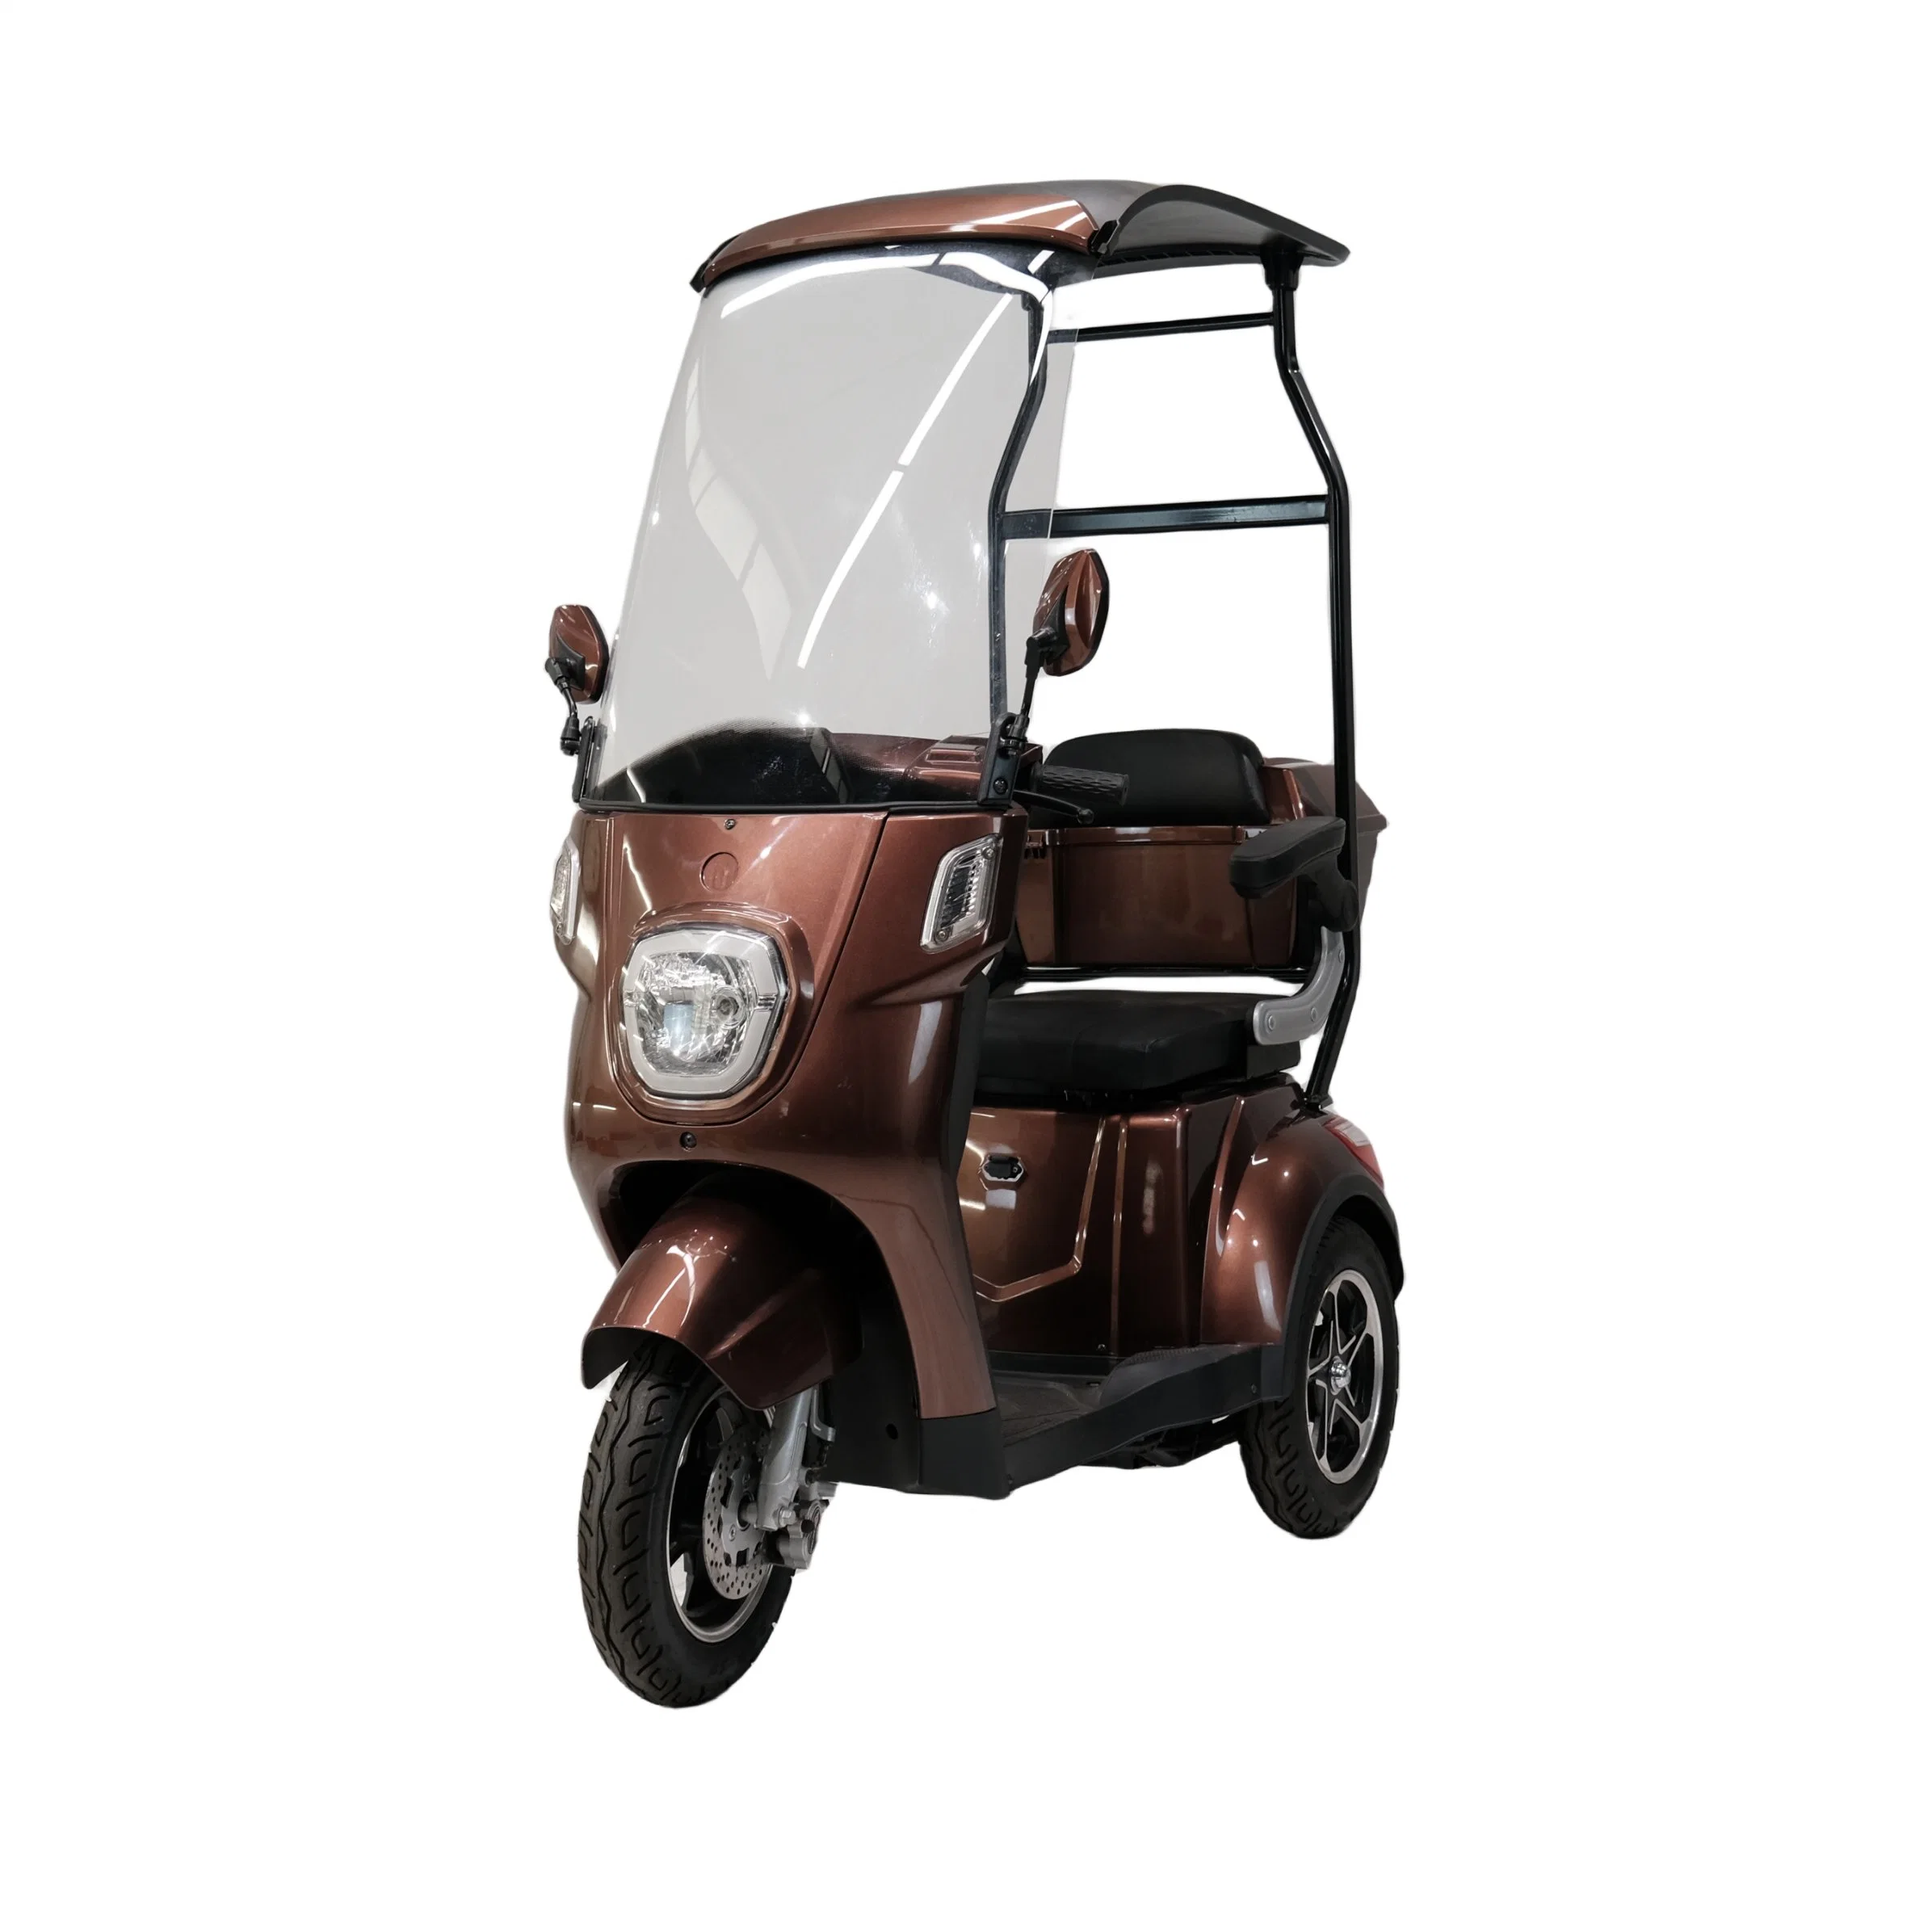 Mini motociclo elétrico idoso de três rodas com tejadilho de 3 rodas Triciclo para o automóvel pessoal Rickshaw